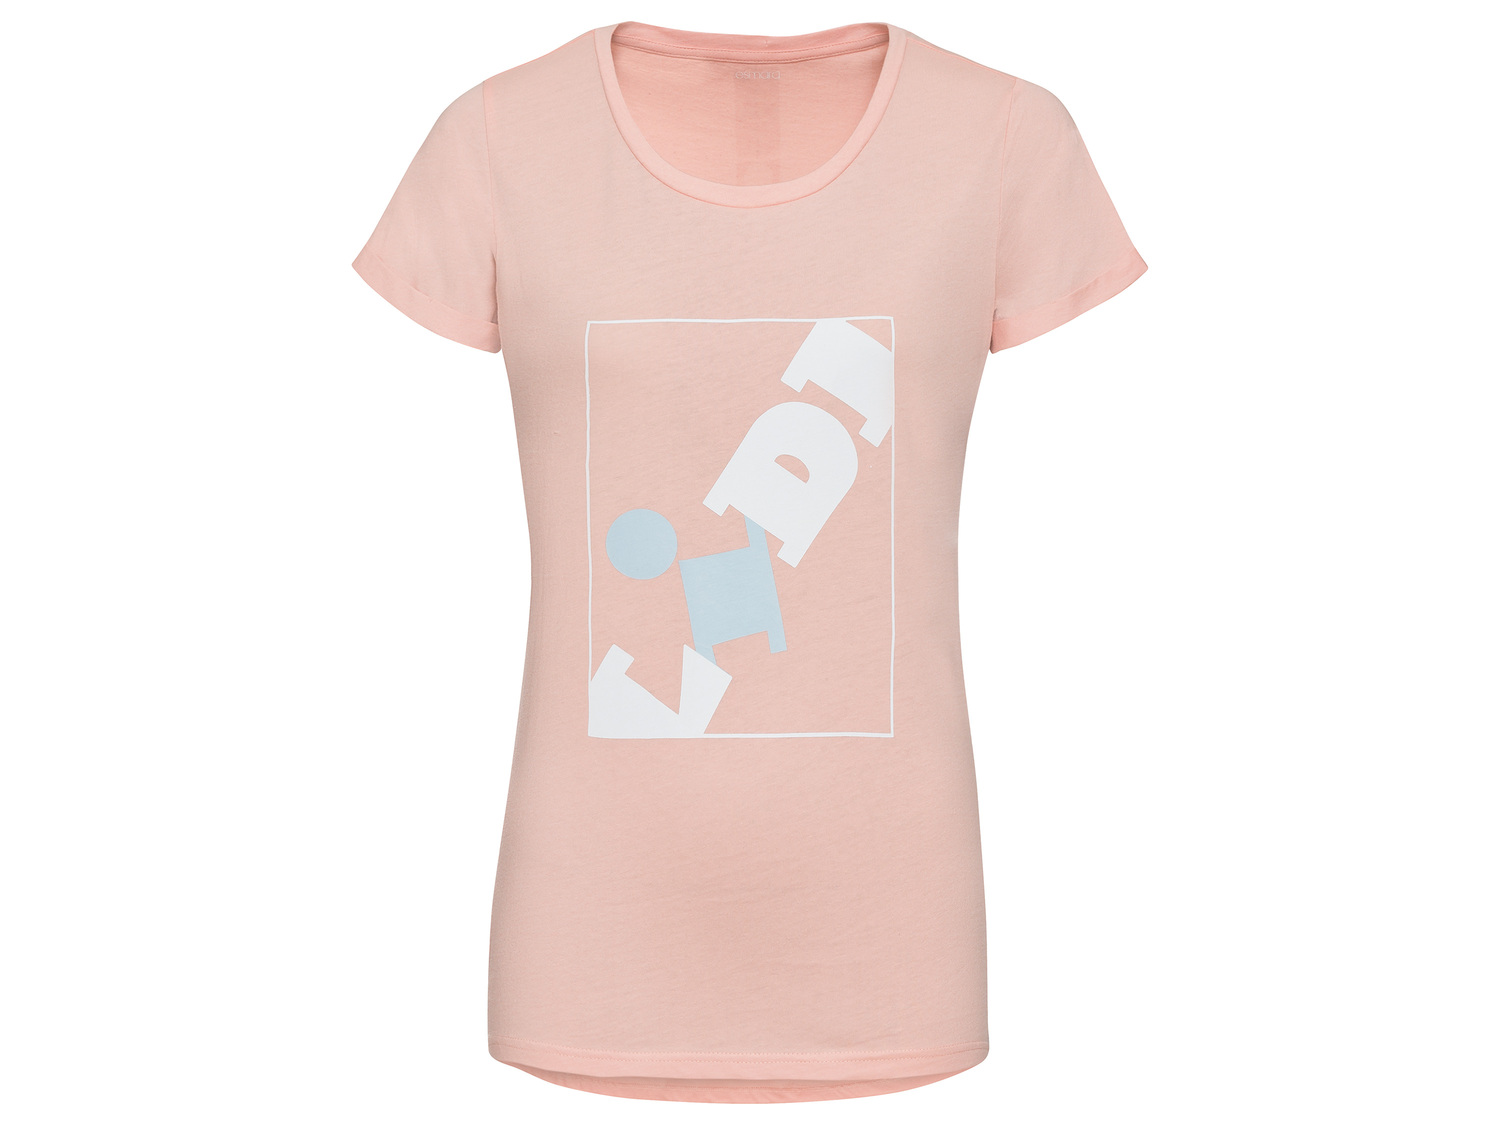 T-shirt LIDL femme ou homme , le prix 4.99 € 
- Quantités limitées à 30 000 ...